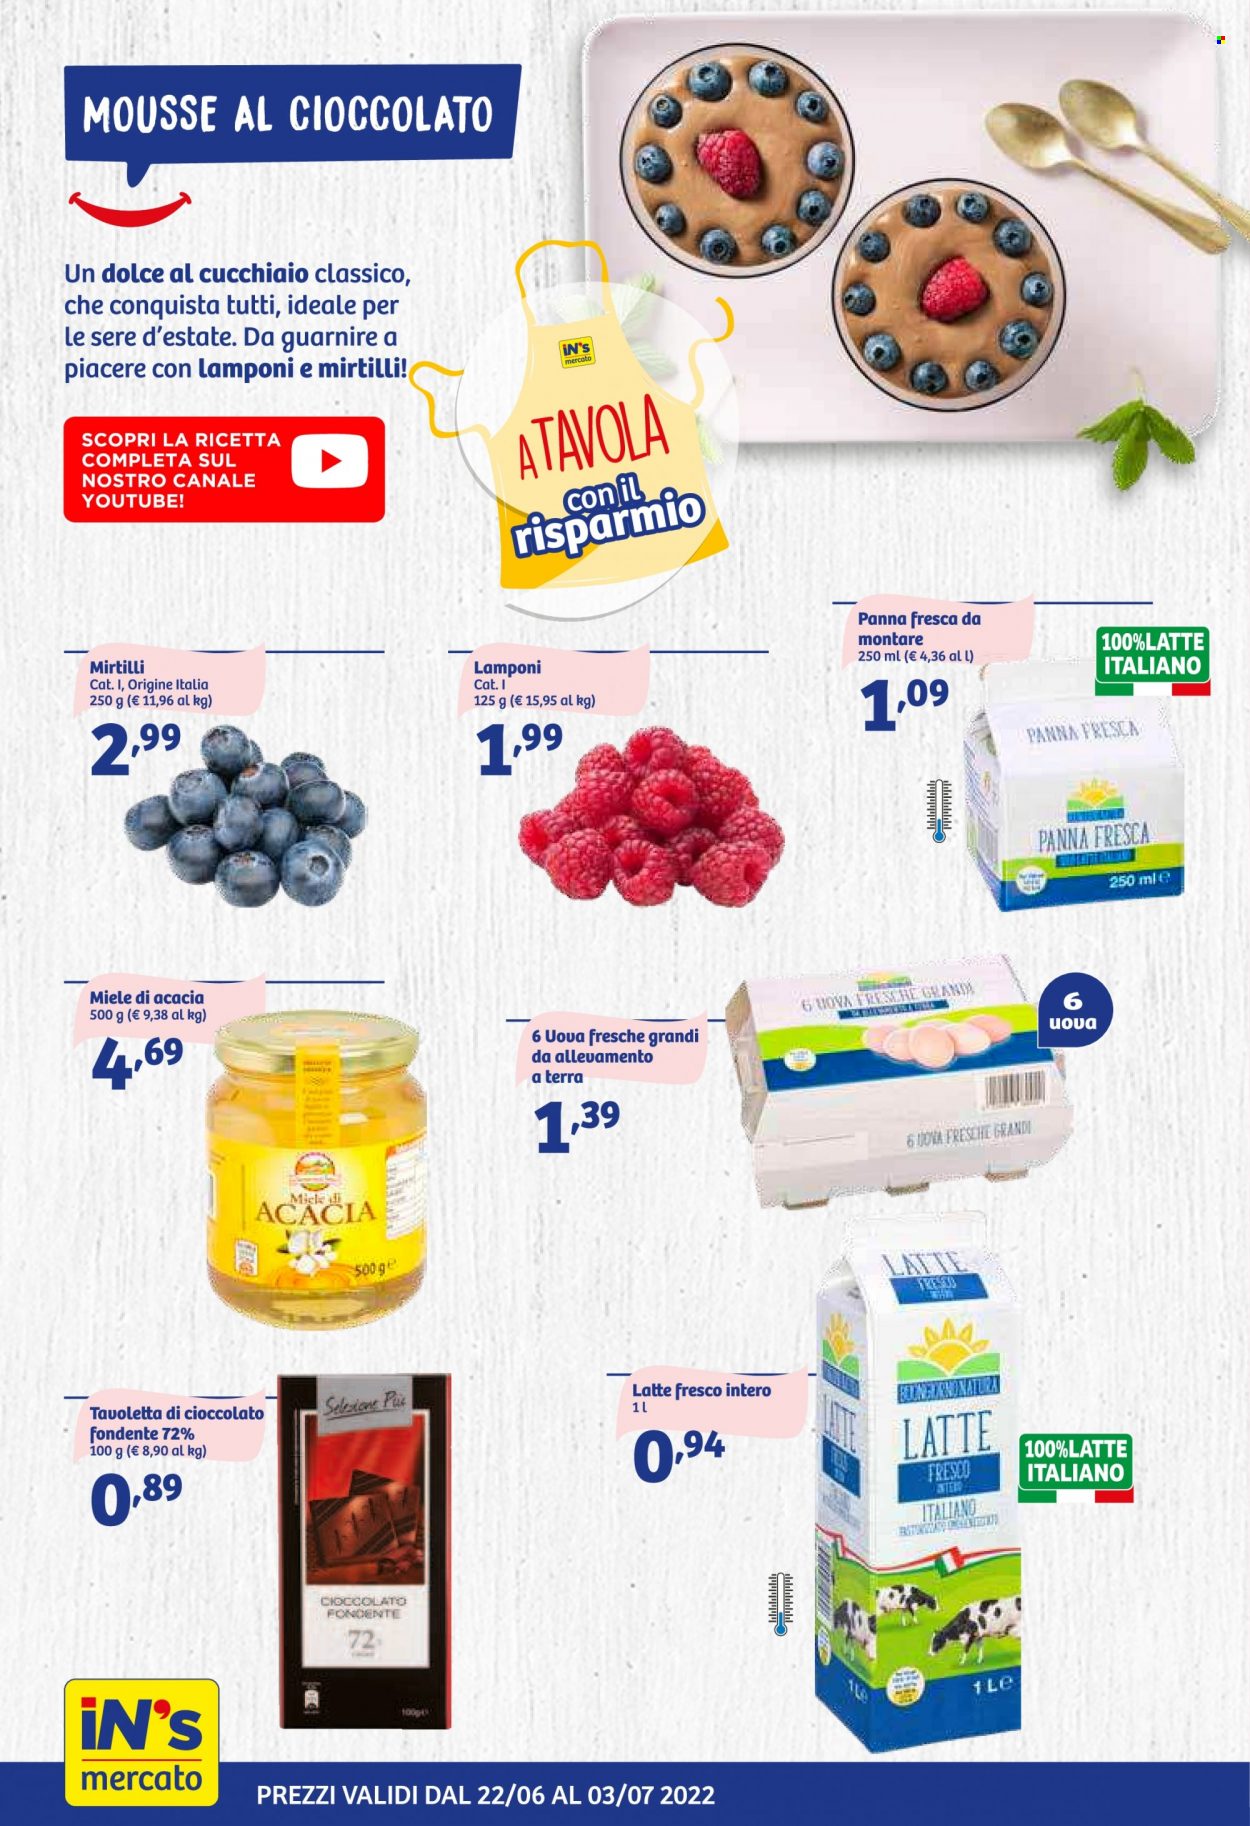 thumbnail - Volantino iN's Mercato - 22/6/2022 - 3/7/2022 - Prodotti in offerta - mousse, uova, panna, panna fresca, tavoletta di cioccolato, miele, miele di acacia. Pagina 4.